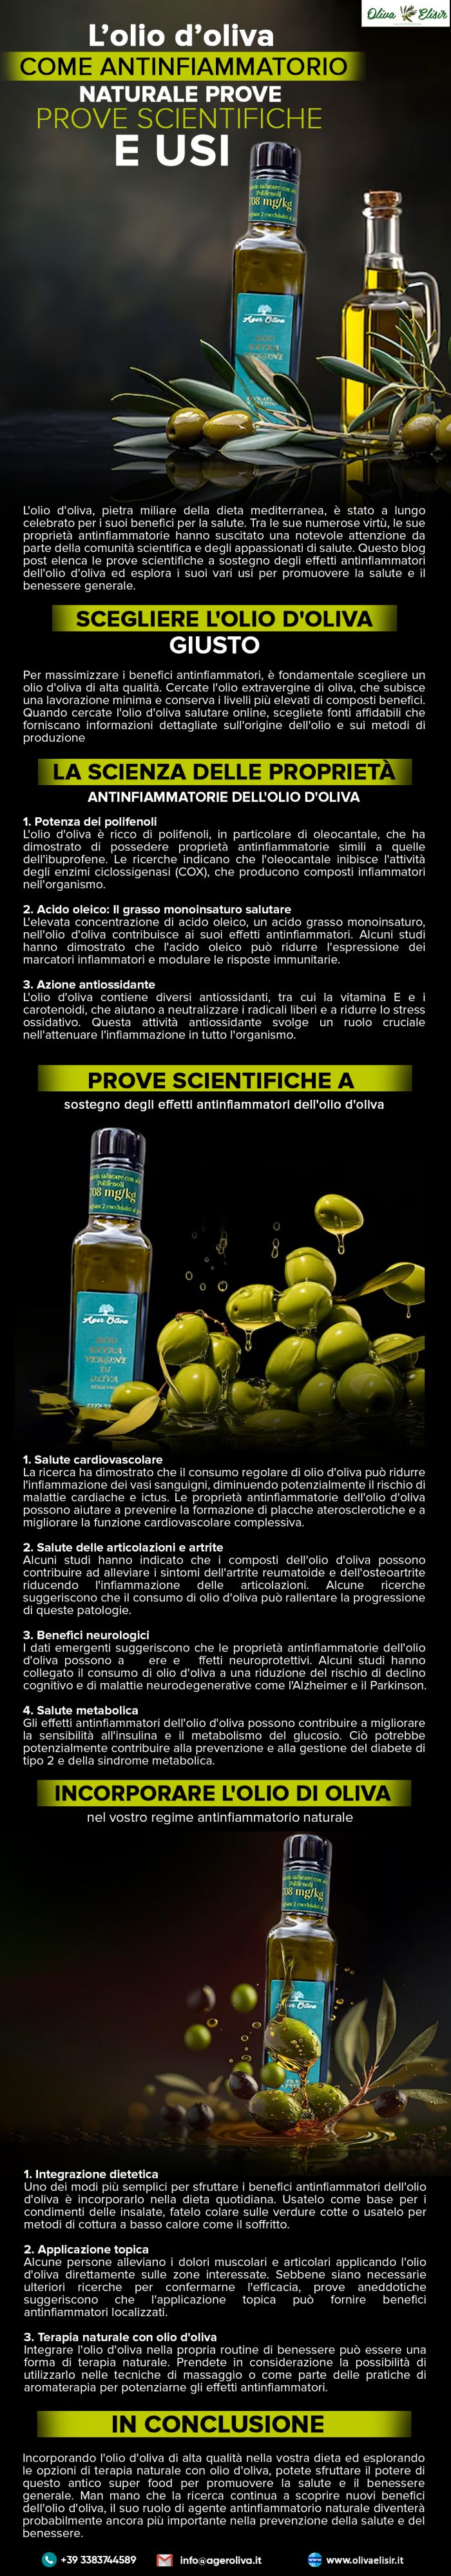 L’olio d’oliva come antinfiammatorio naturale: Prove scientifiche e usi